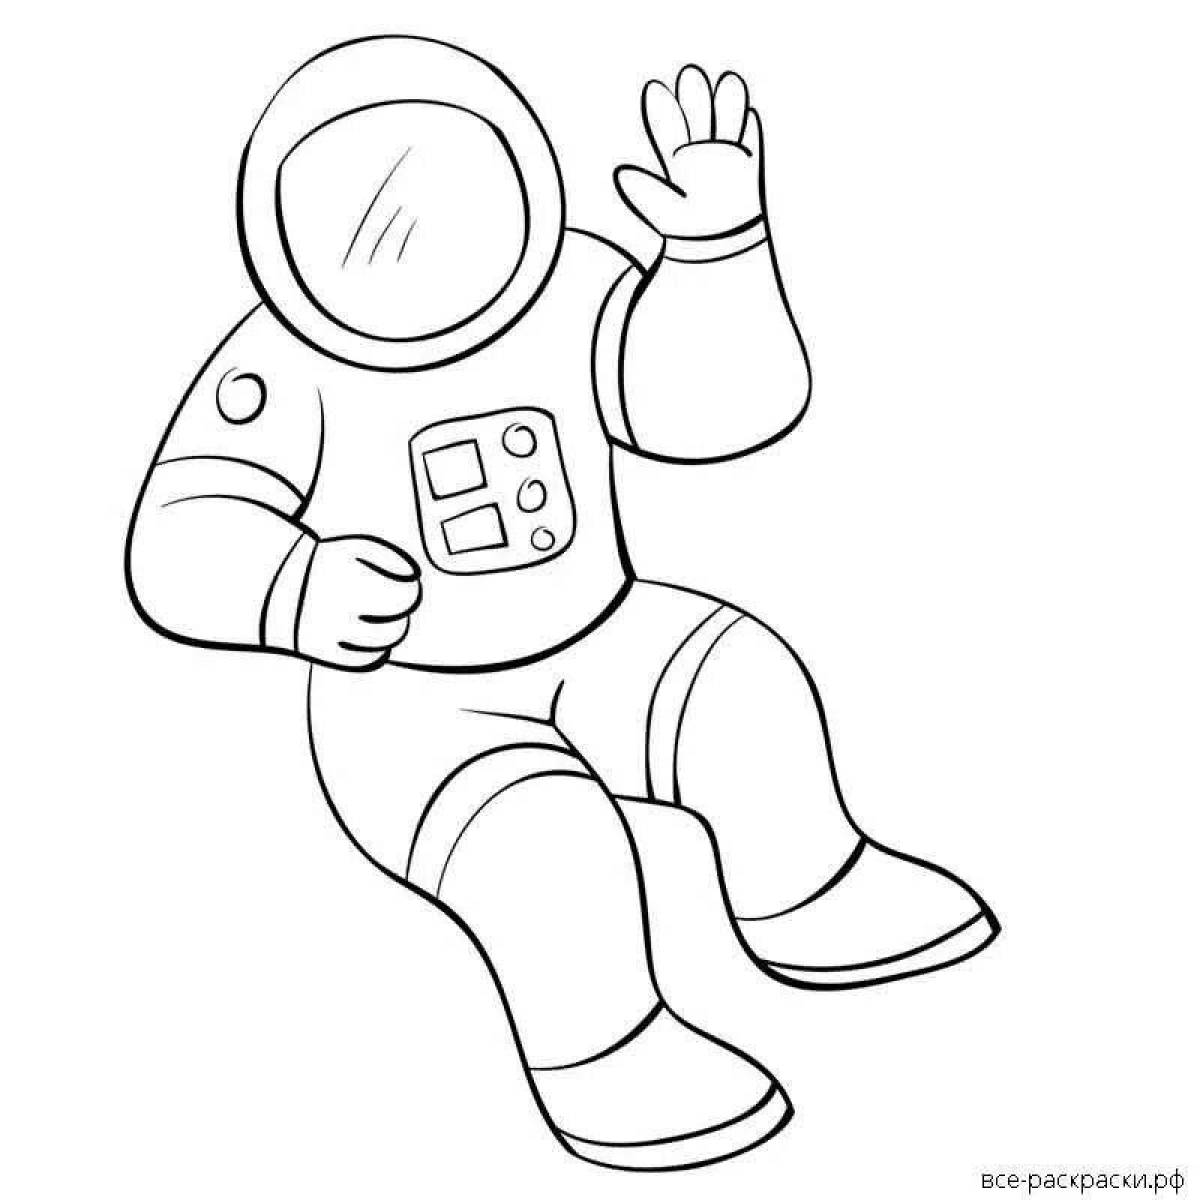 Шаблон космонавта для аппликации для детей. Космонавт раскраска для детей. Космонавт раскраска для малышей. Космонавт для раскрашивания для детей. Раскраска Космонавта в скафандре для детей.